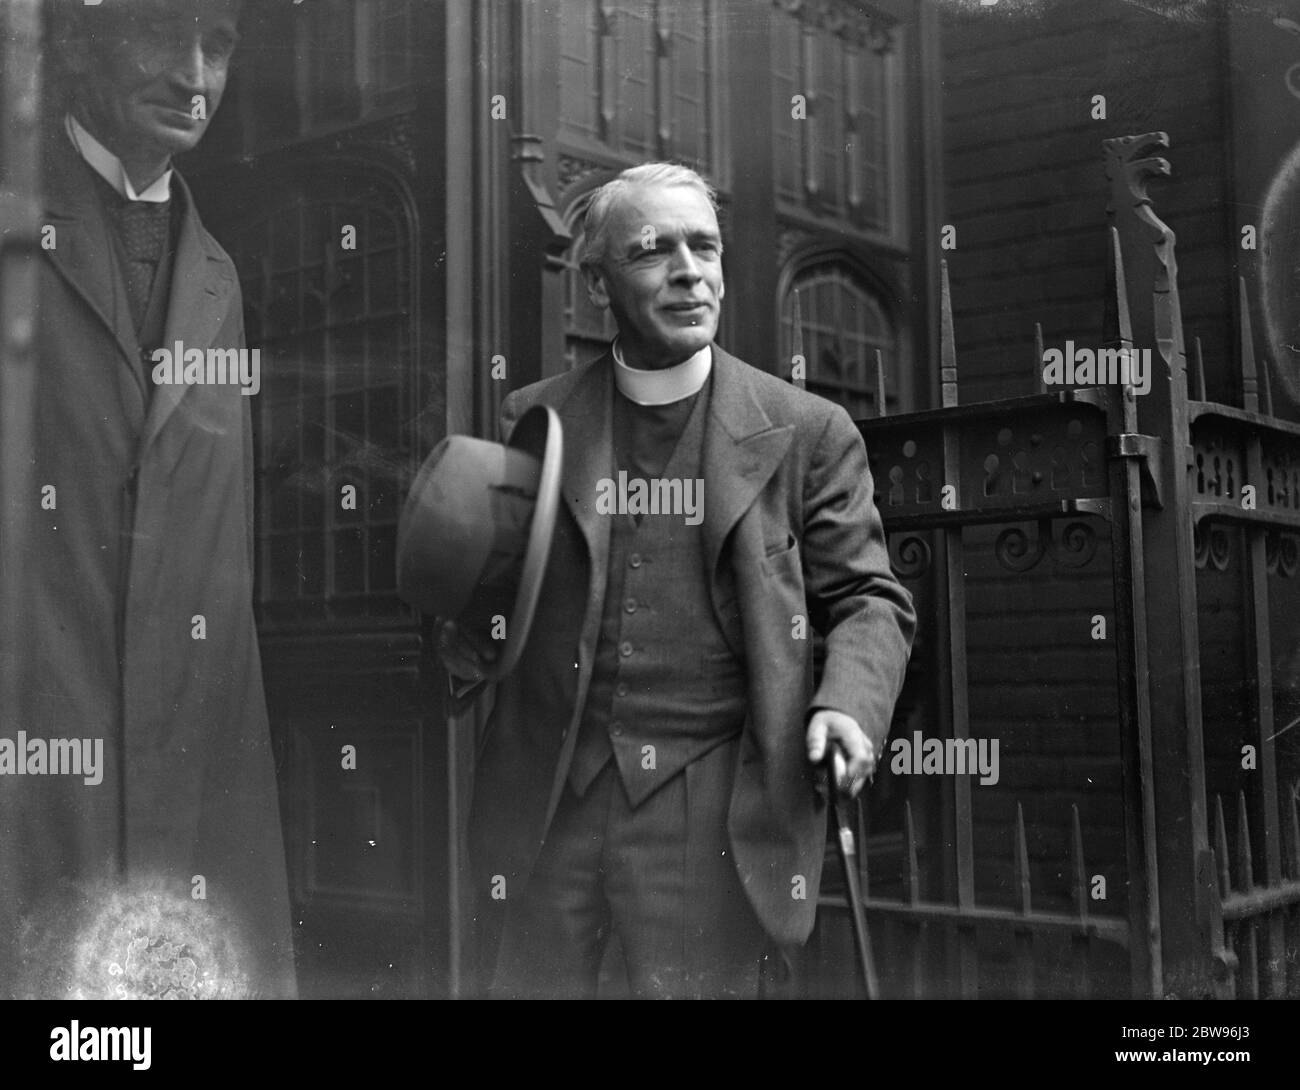 Rettore di Stiffkey nella casella testimone . Il Rev. Harold Davidson lascia la Corte del Concistoro a Westminster per pranzo dopo essere apparso come testimone nella sua difesa nella ripresa dell'audizione delle accuse di immoralità che il Vescovo di Norwich gli ha portato contro. 19 maggio 1932 Foto Stock